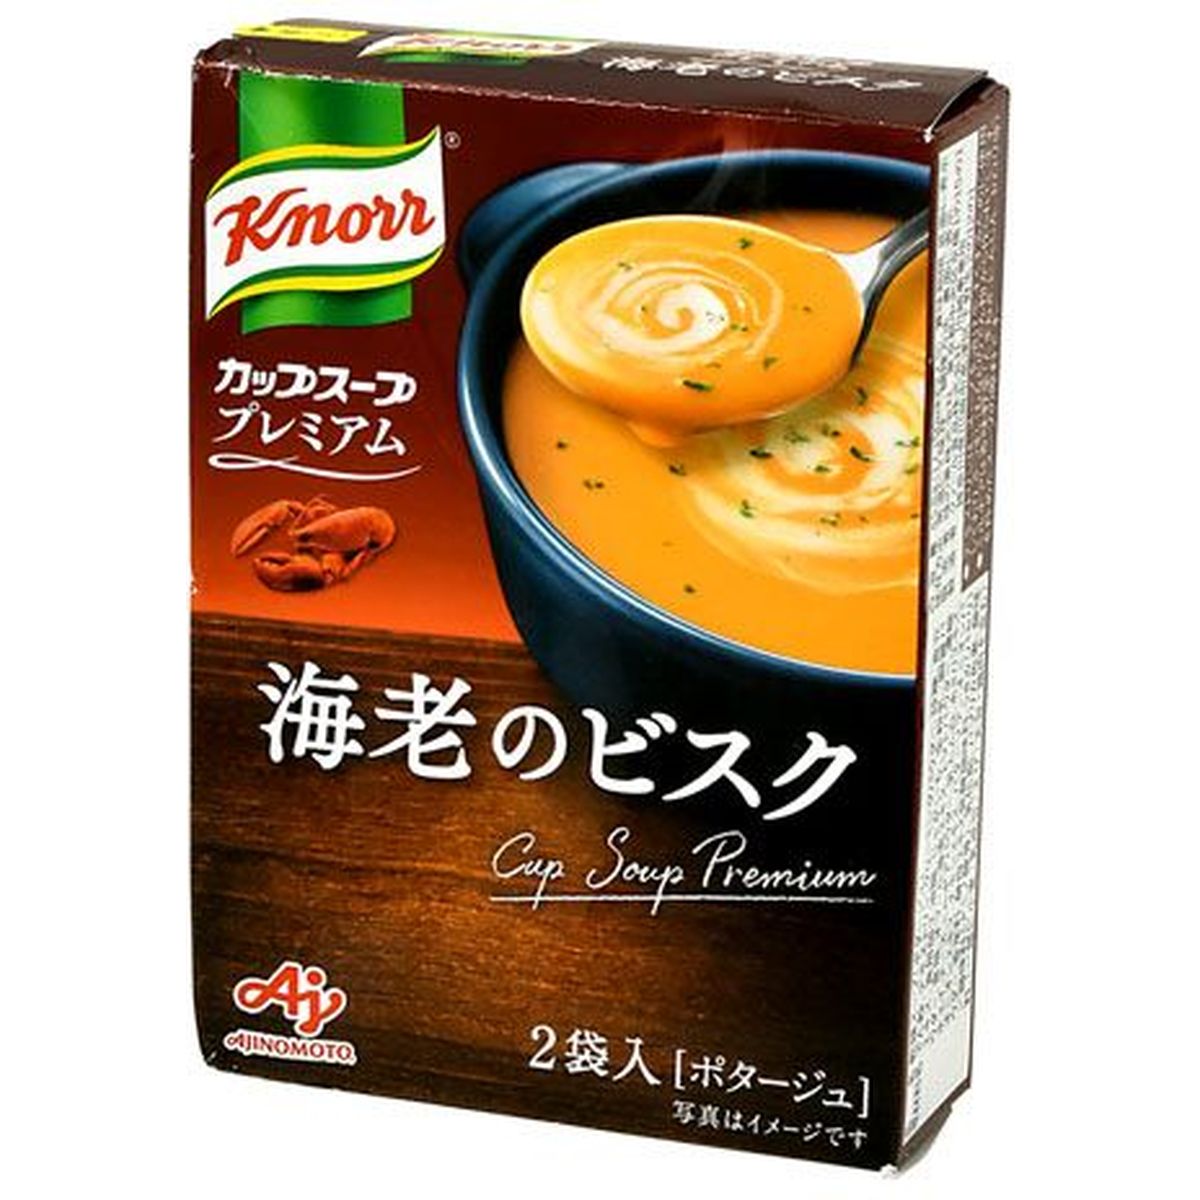 【10個入リ】クノール カップスープ プレミアム海老ノビスク 2袋